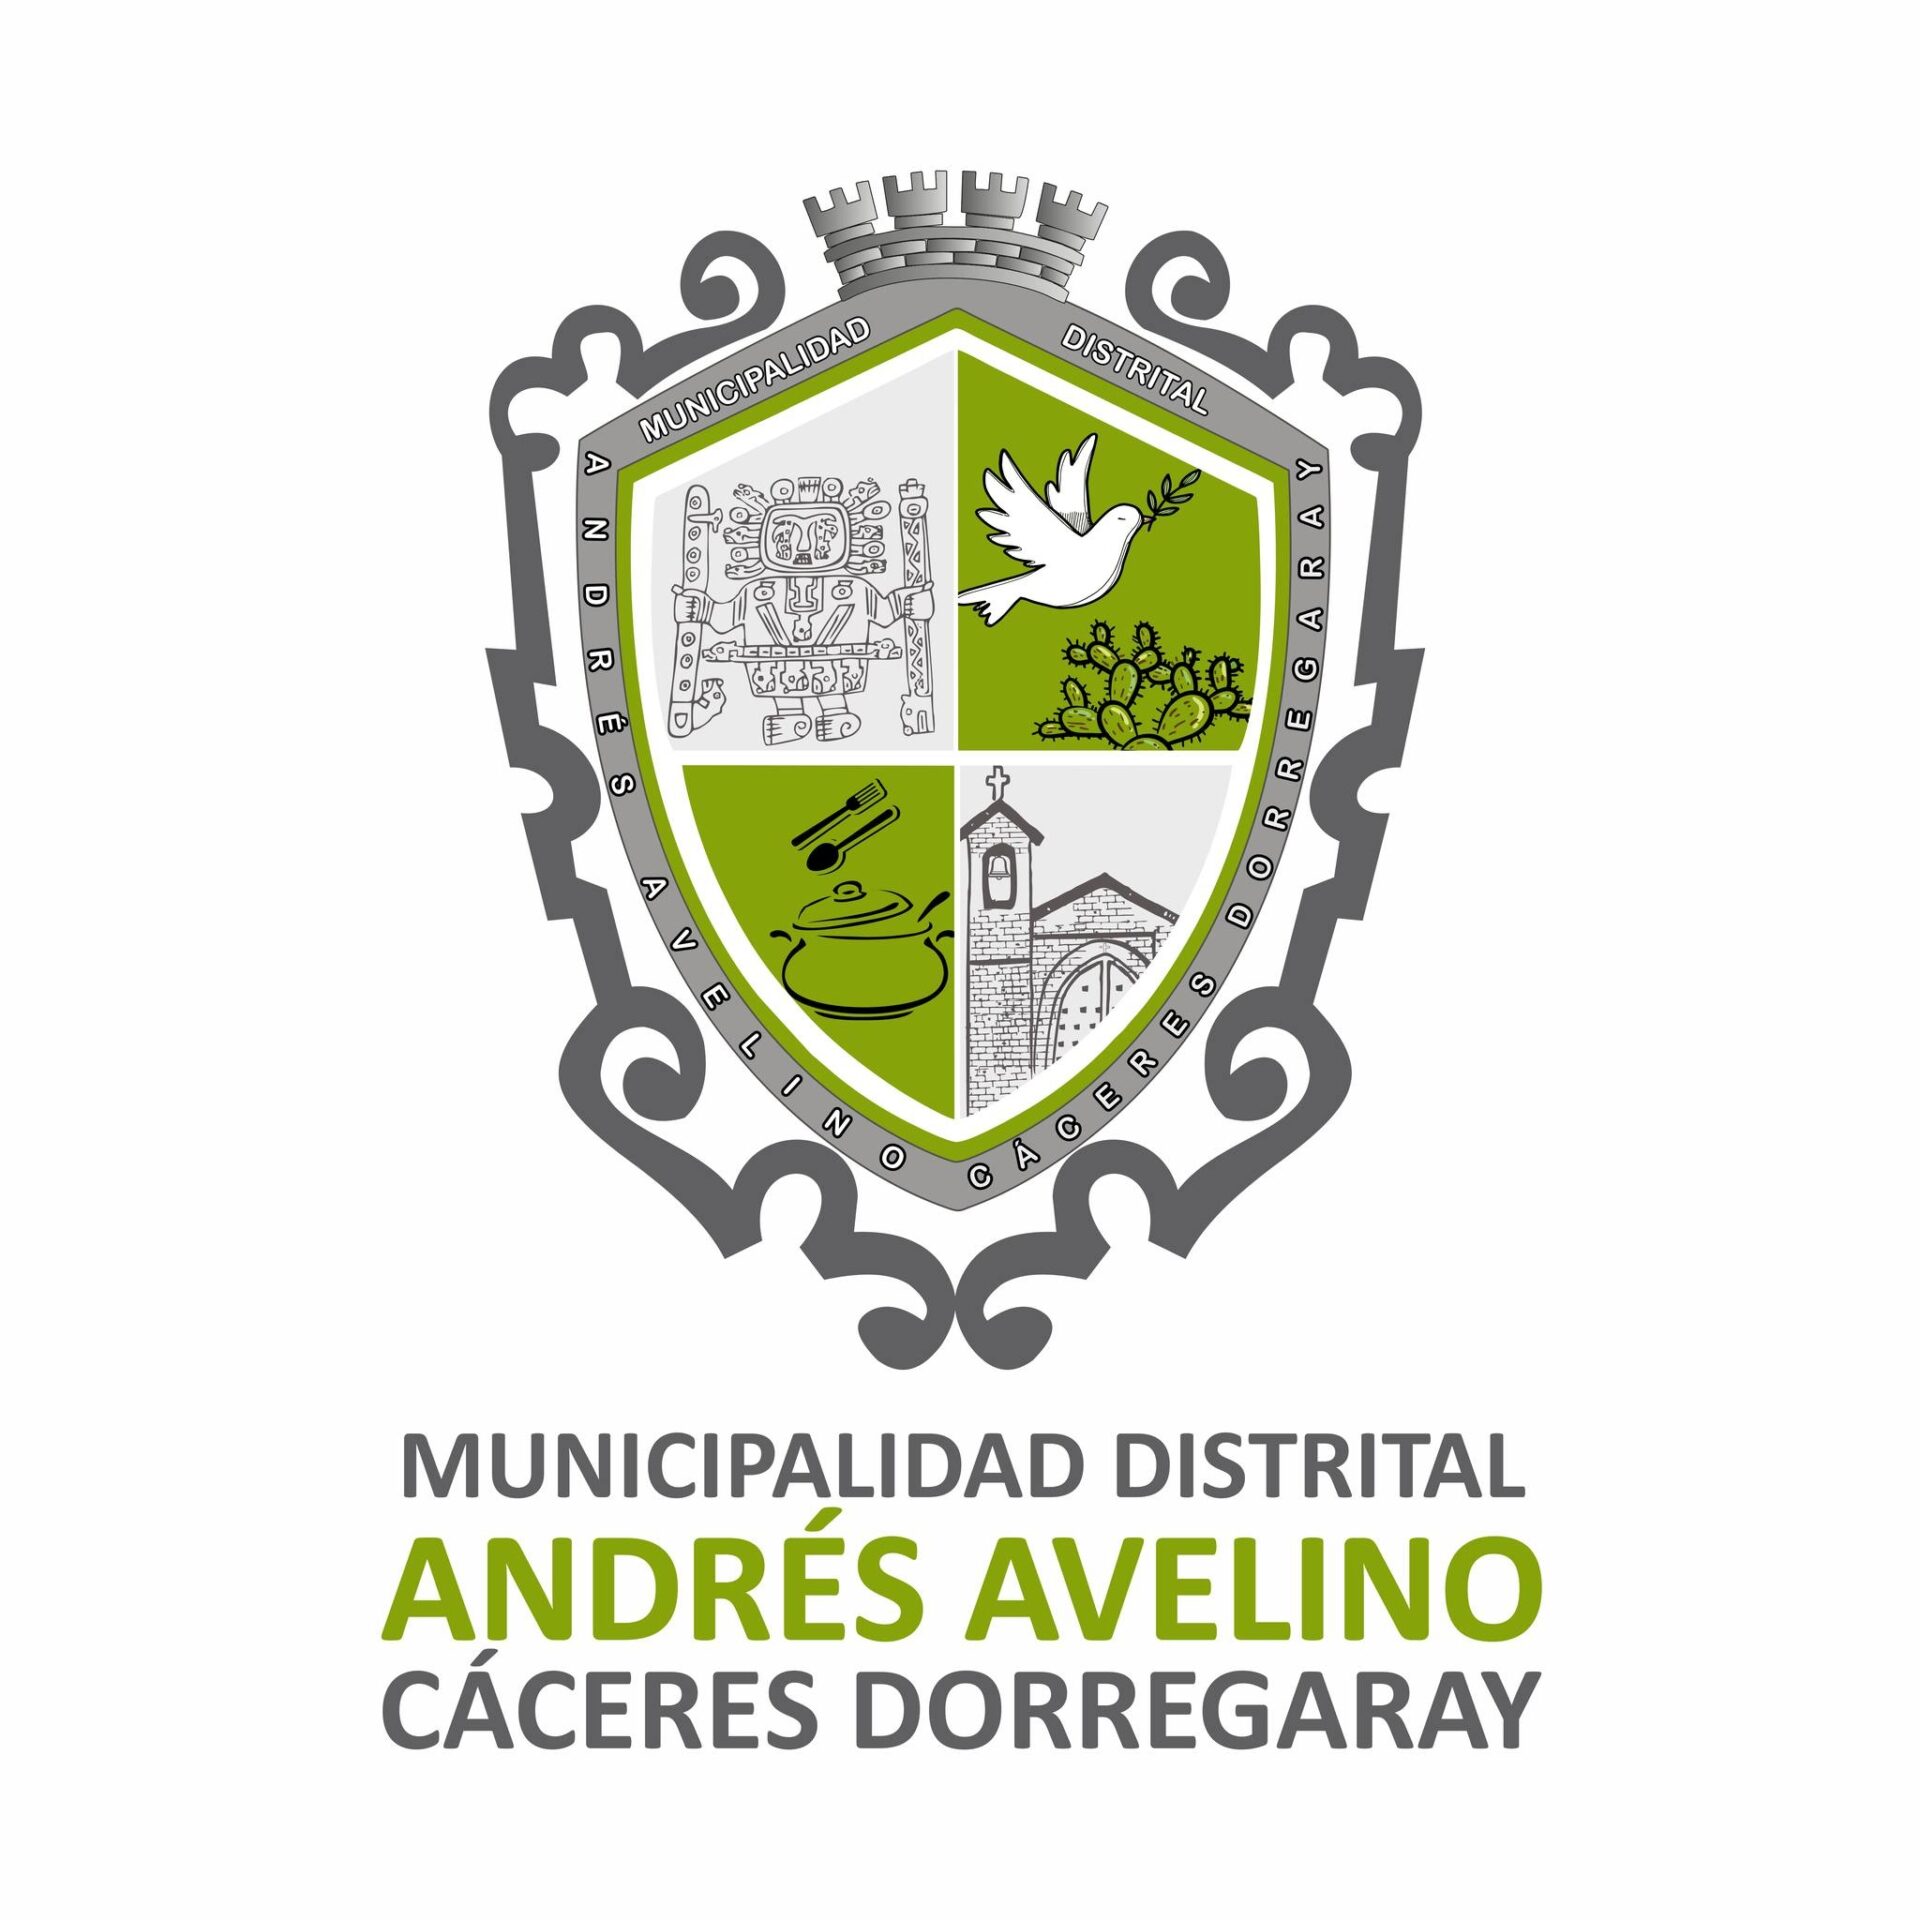 Municipalidad Distrital de Andrés Avelino Cáceres Dorregaray